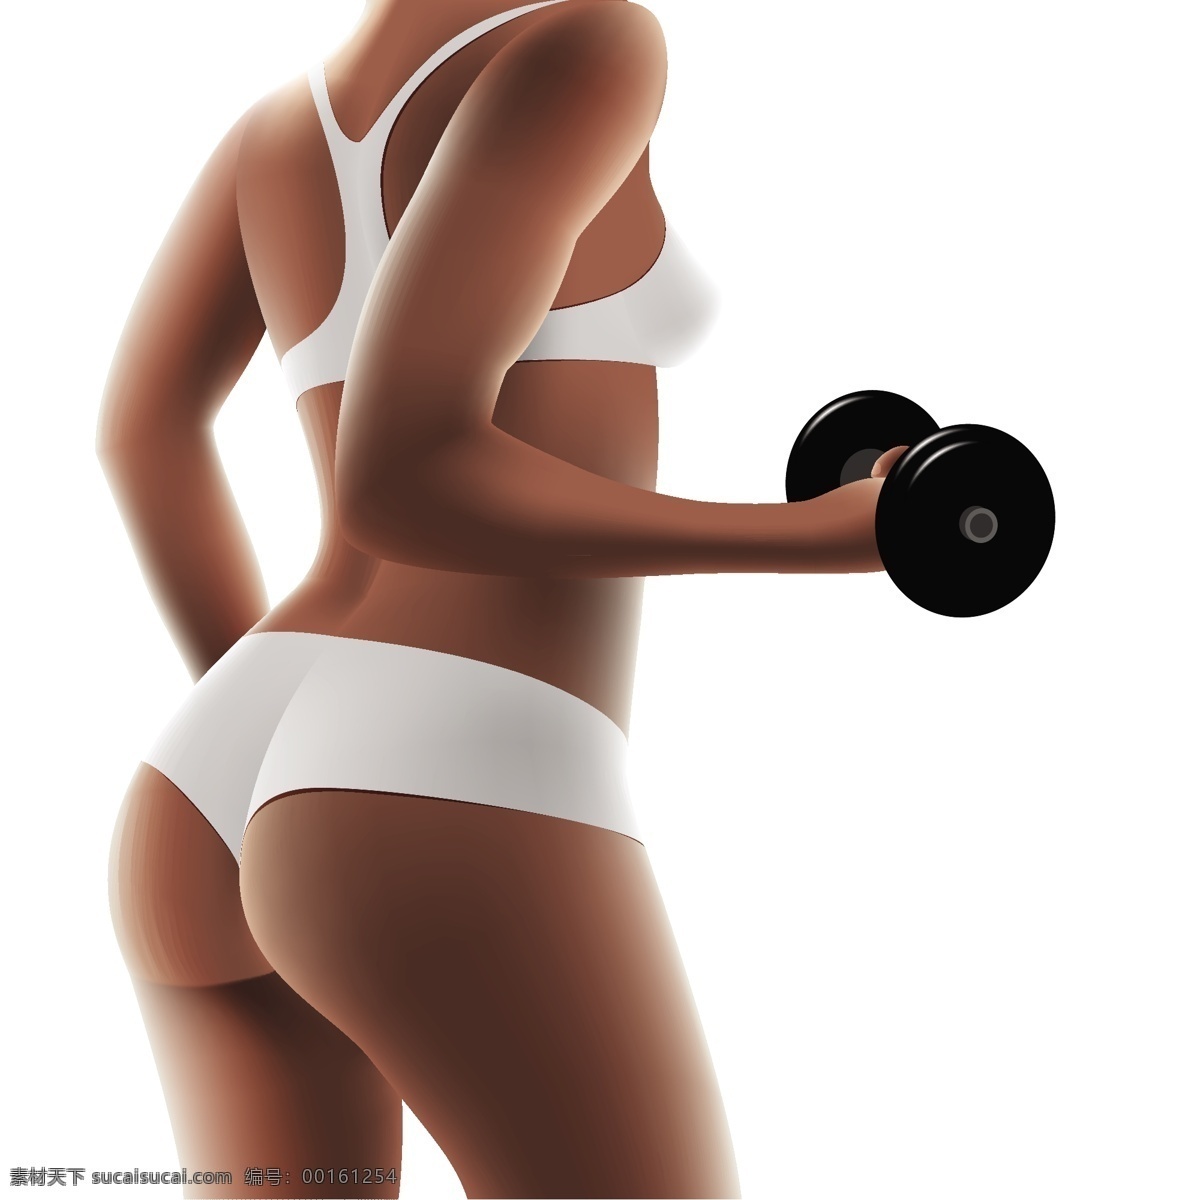 美女健身 青春 活泼 靓丽 运动 塑身 美体 塑形 健身 健身图标 锻炼身体 女性妇女 人物图库